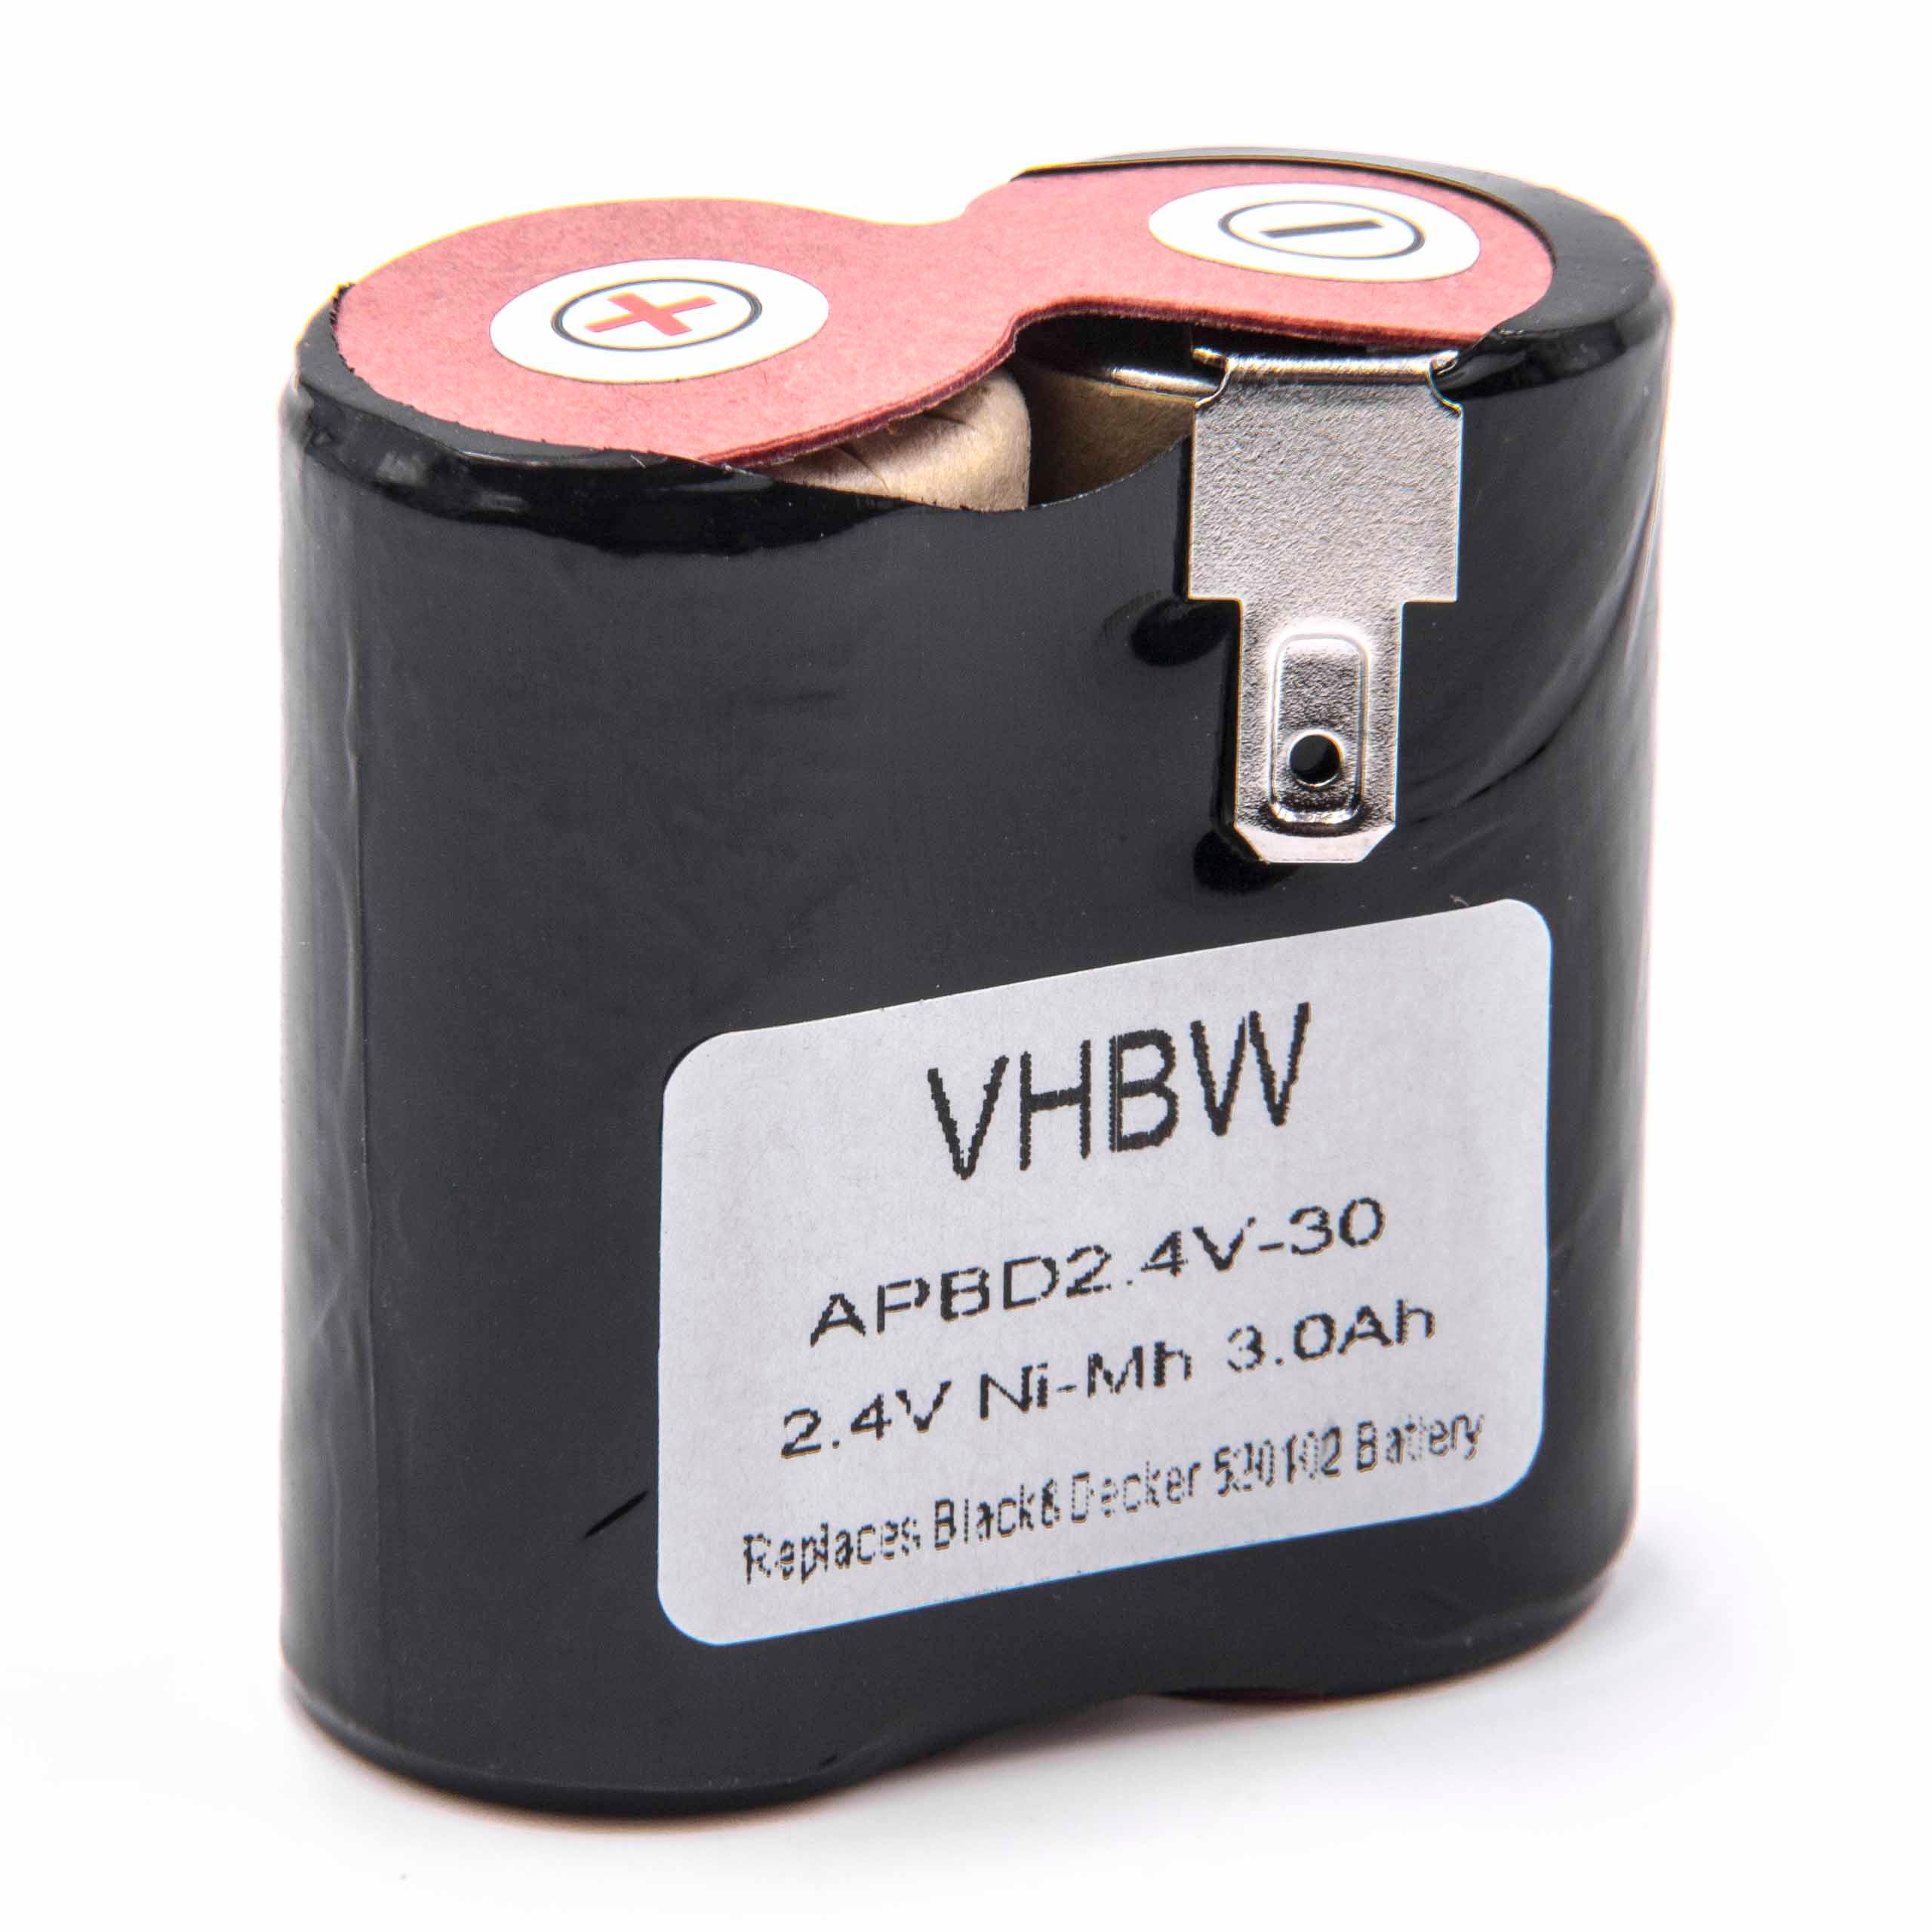 Batterie remplace Black & Decker 520102 pour robot aspirateur - 3000mAh 2,4V NiMH